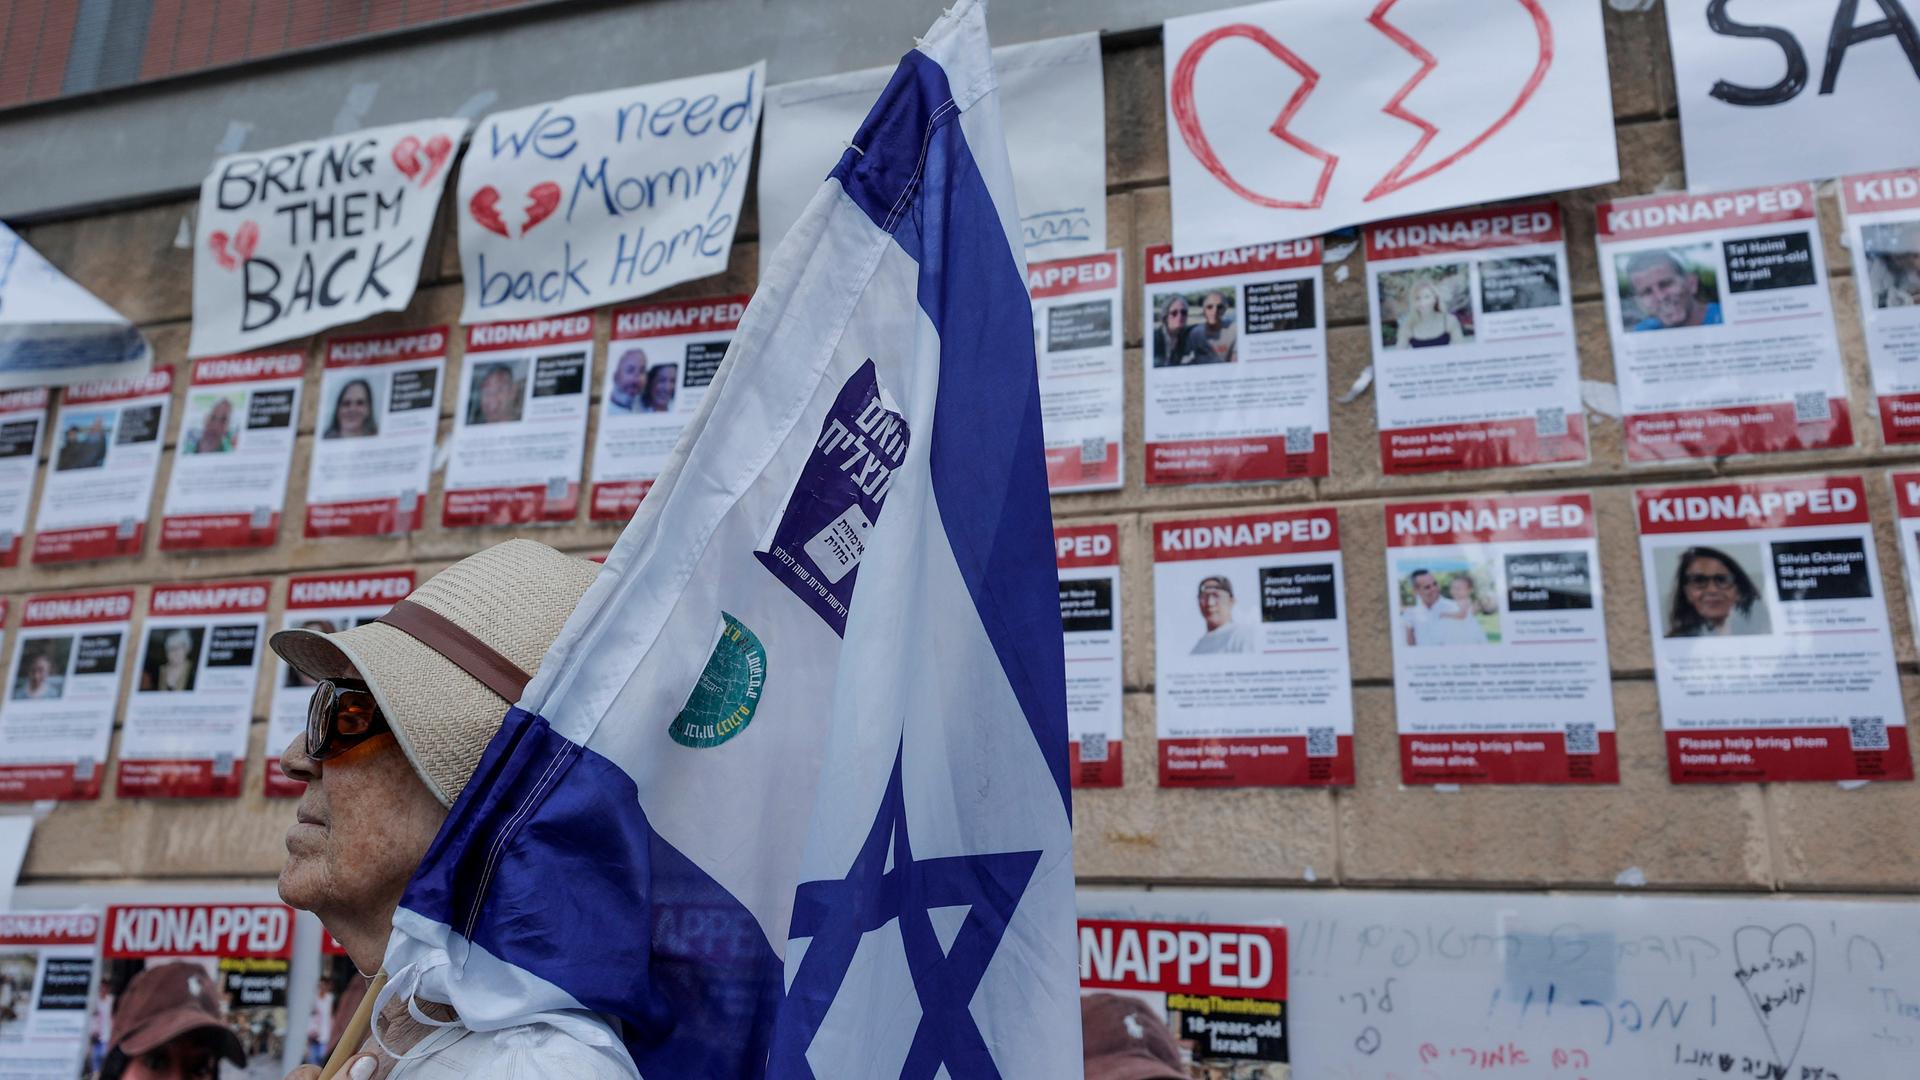 Bilder von Menschen, die die Hamas als Geiseln genommen haben, an einer Wand in Tel Aviv